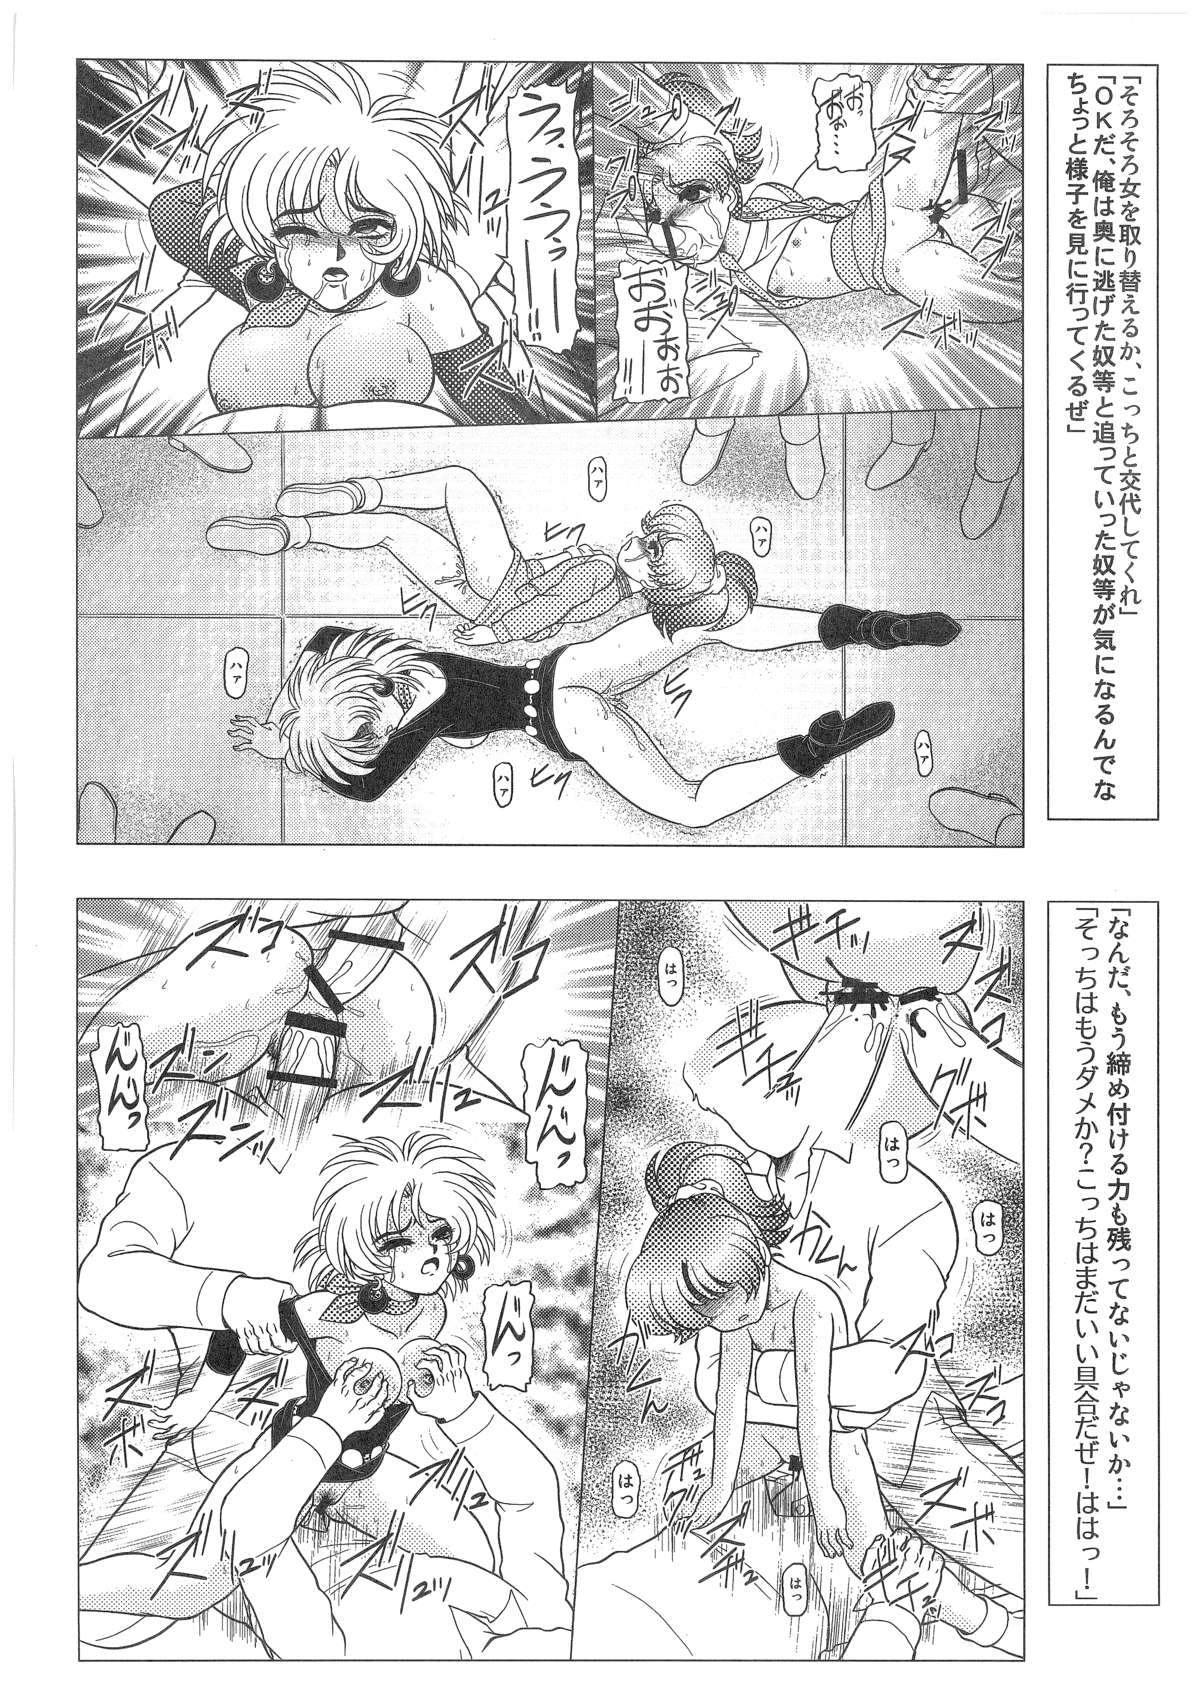 [Dakimakuma, Jingai Makyou Club (WING☆BIRD)] CHARA EMU W☆B010 GONDAM 008 ZZ-W-F91 (Various) page 21 full